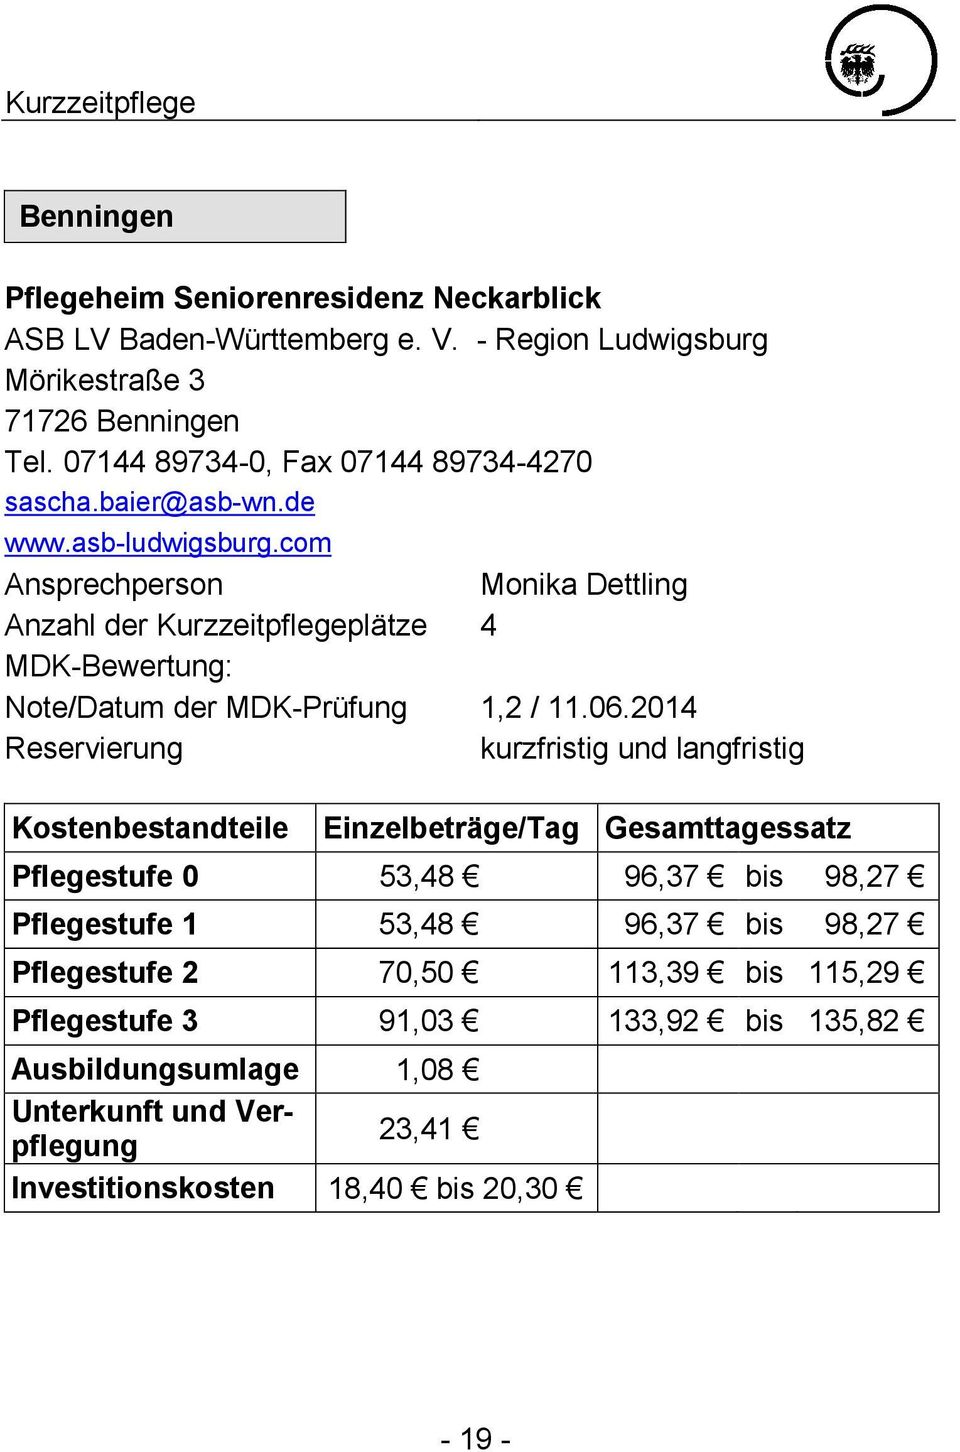 com Ansprechperson Monika Dettling Anzahl der Kurzzeitpflegeplätze 4 Note/Datum der MDK-Prüfung 1,2 / 11.06.